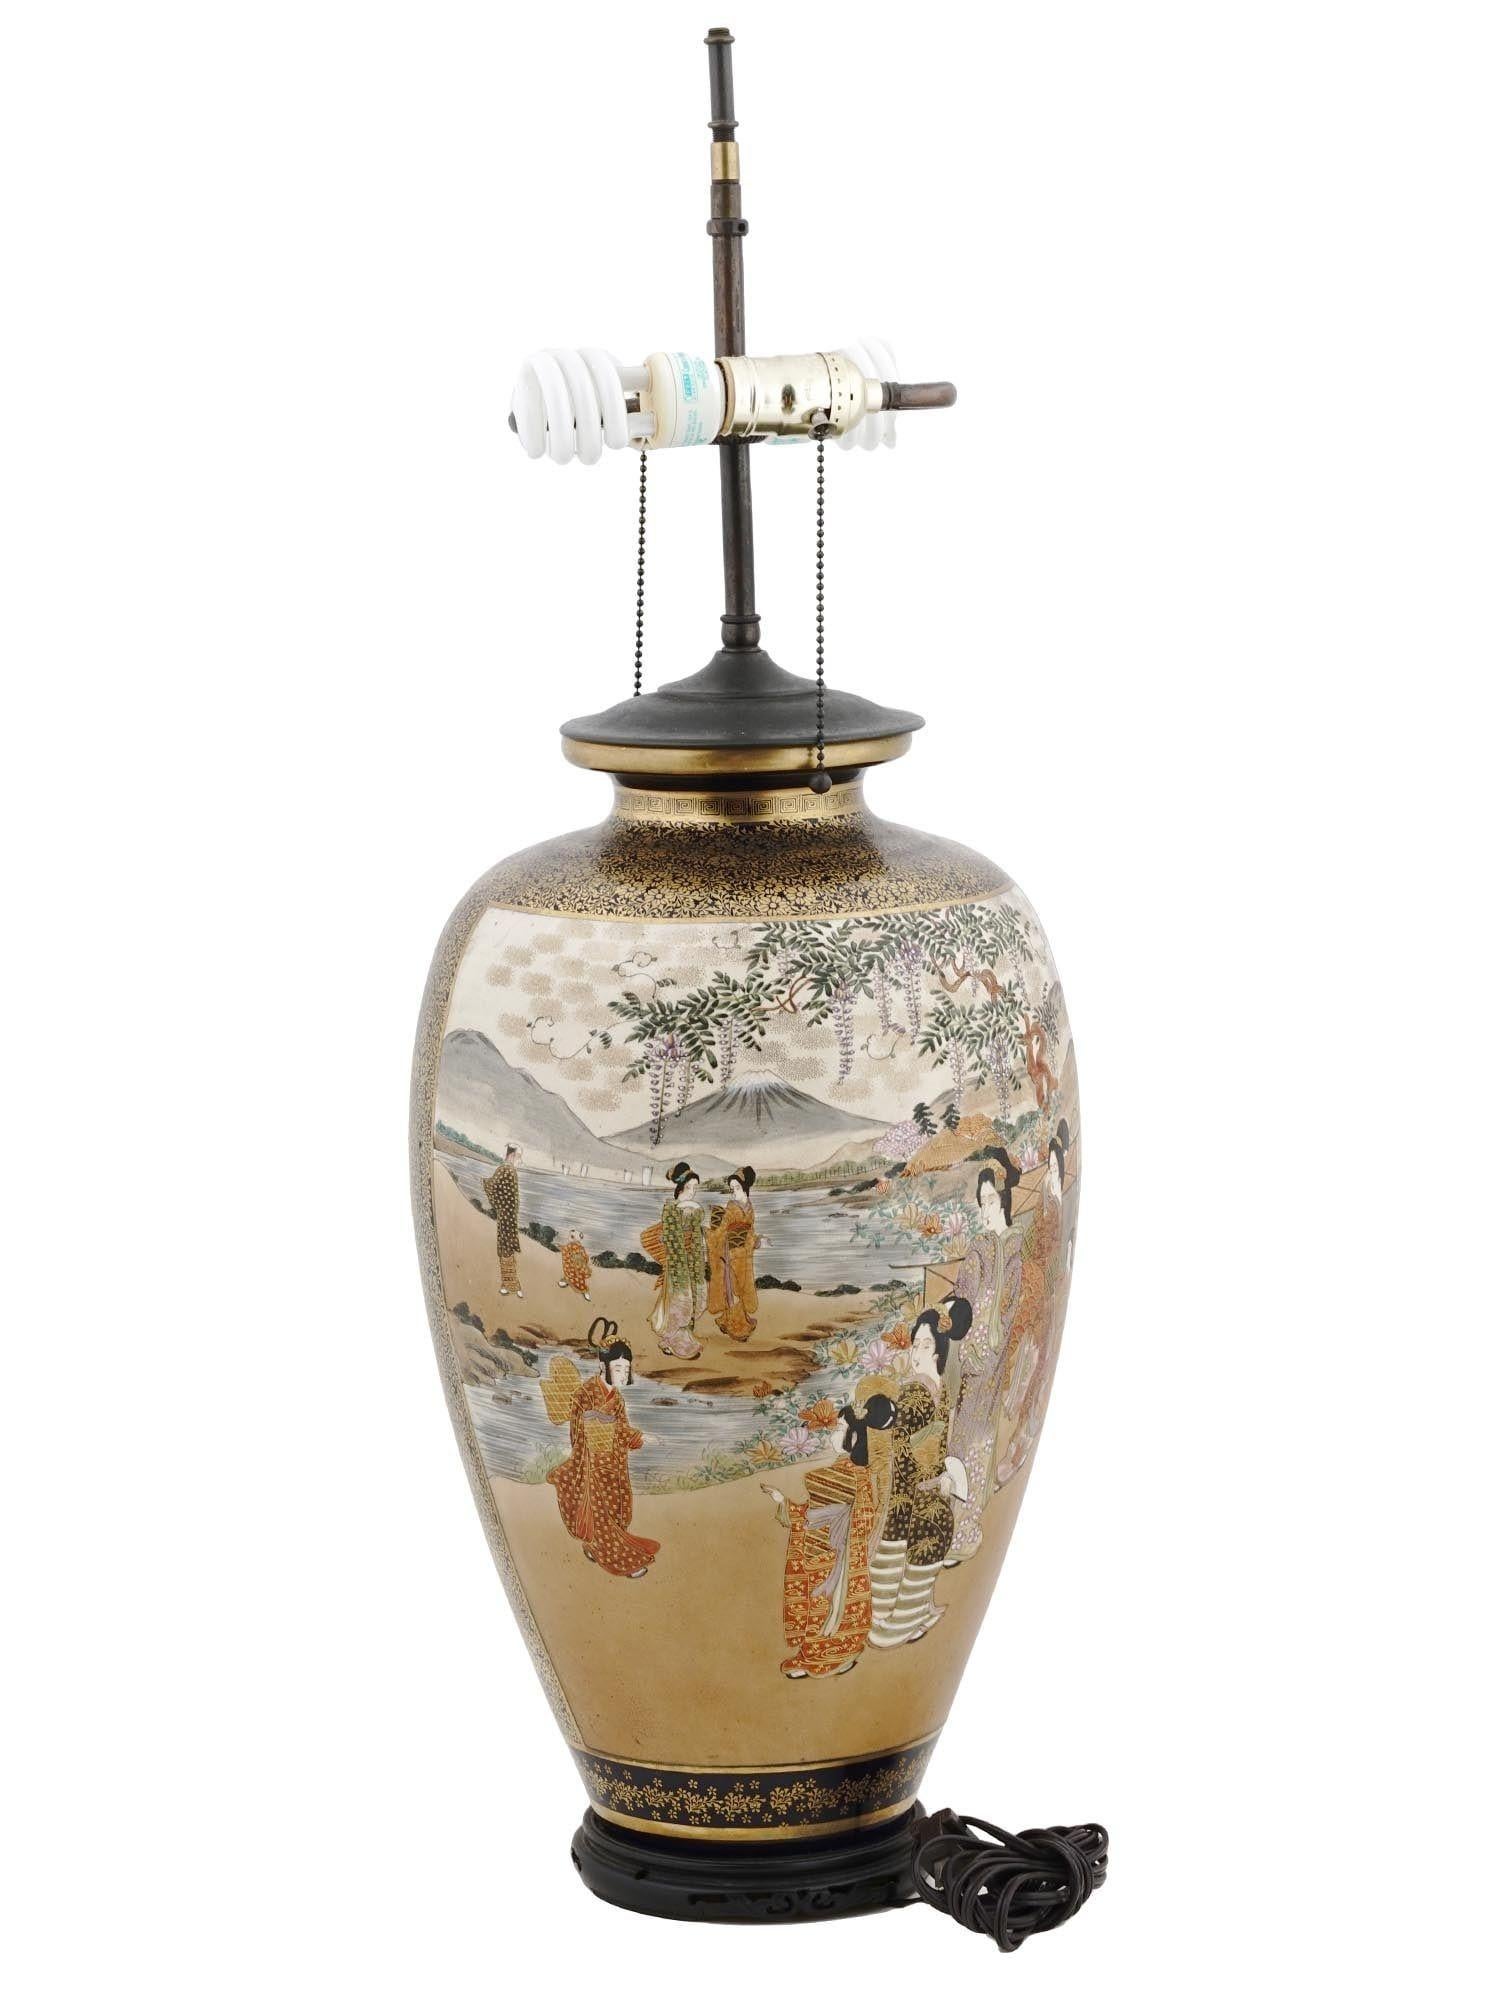 Grand vase japonais ancien d'époque Meiji Satsuma équipé d'une lampe de table avec deux prises standard, câblage et fiche, monté sur un socle en bois ébonisé.  